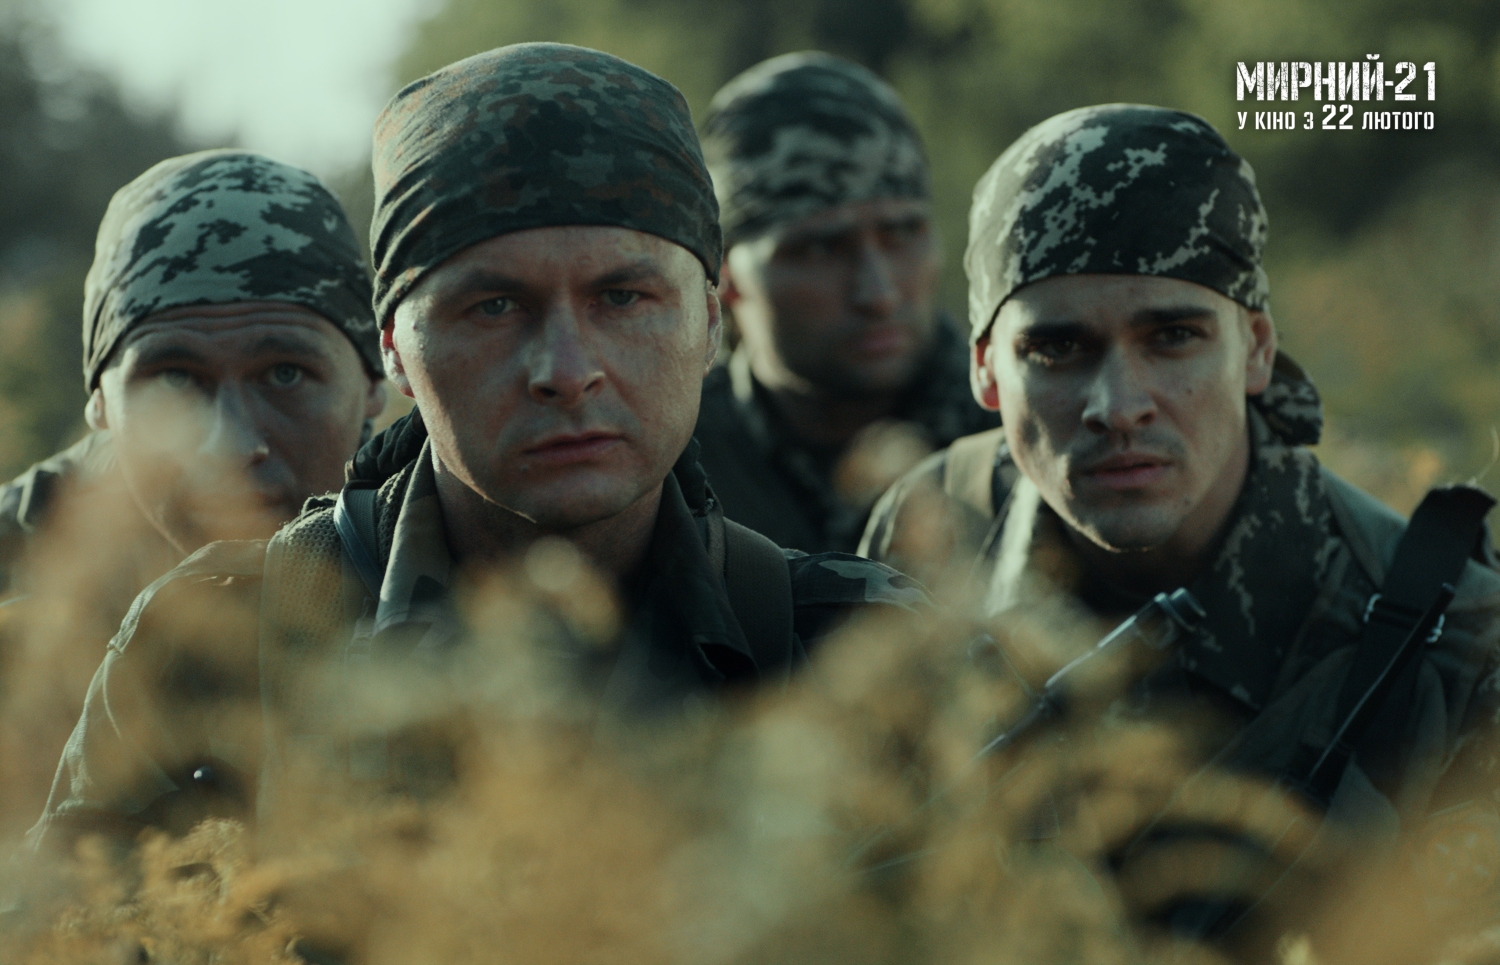 Творці воєнної драми «Мирний-21» презентували тизер-трейлер та анонсували дату виходу фільму в широкий український прокат